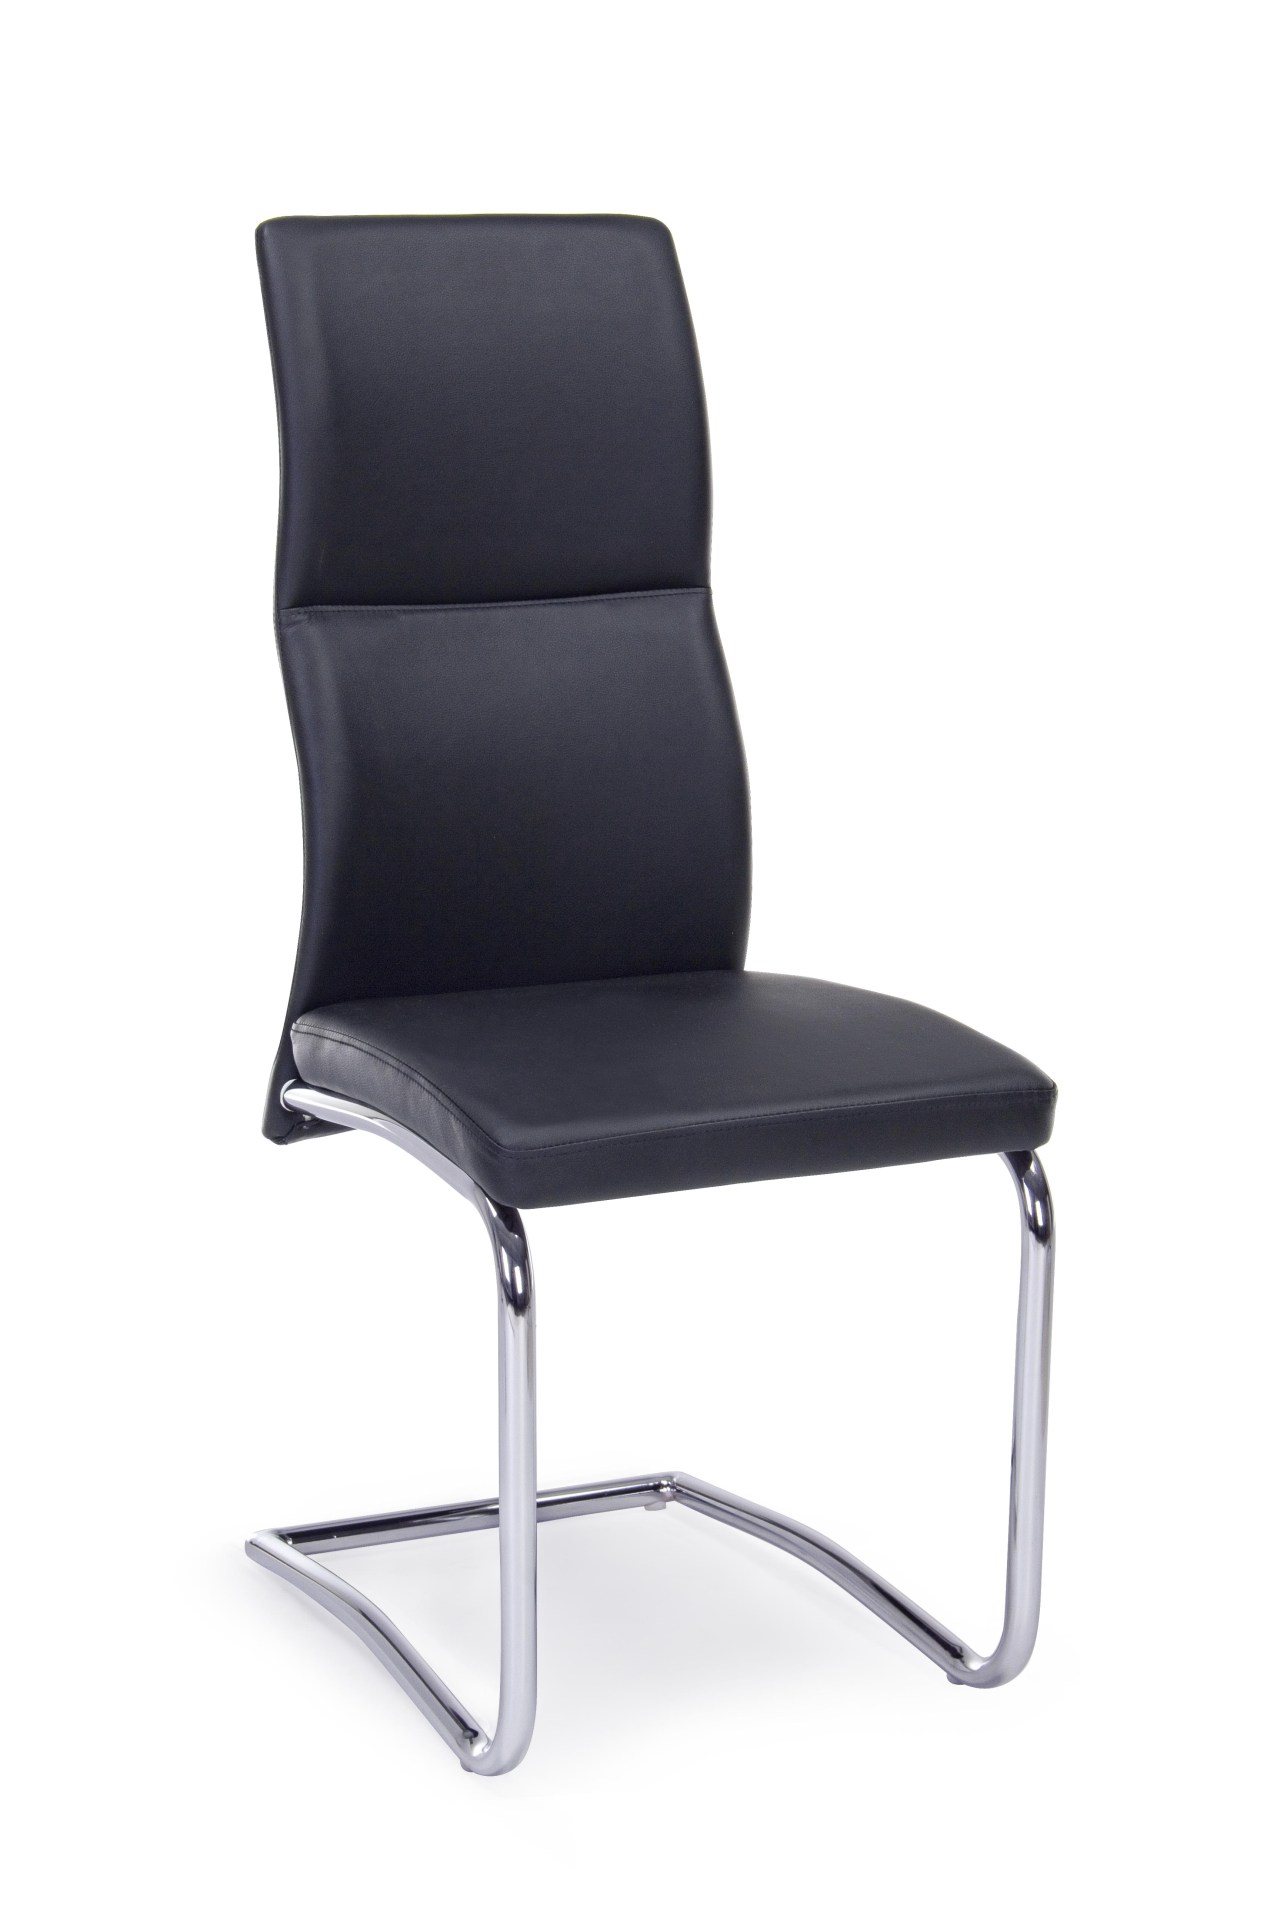 Der Esszimmerstuhl Thelma überzeugt mit seinem modernem Design. Gefertigt wurde der Stuhl aus Kunstleder, welches einen schwarzen Farbton besitzt. Das Gestell ist aus Metall und ist Silber. Die Sitzhöhe beträgt 47 cm.